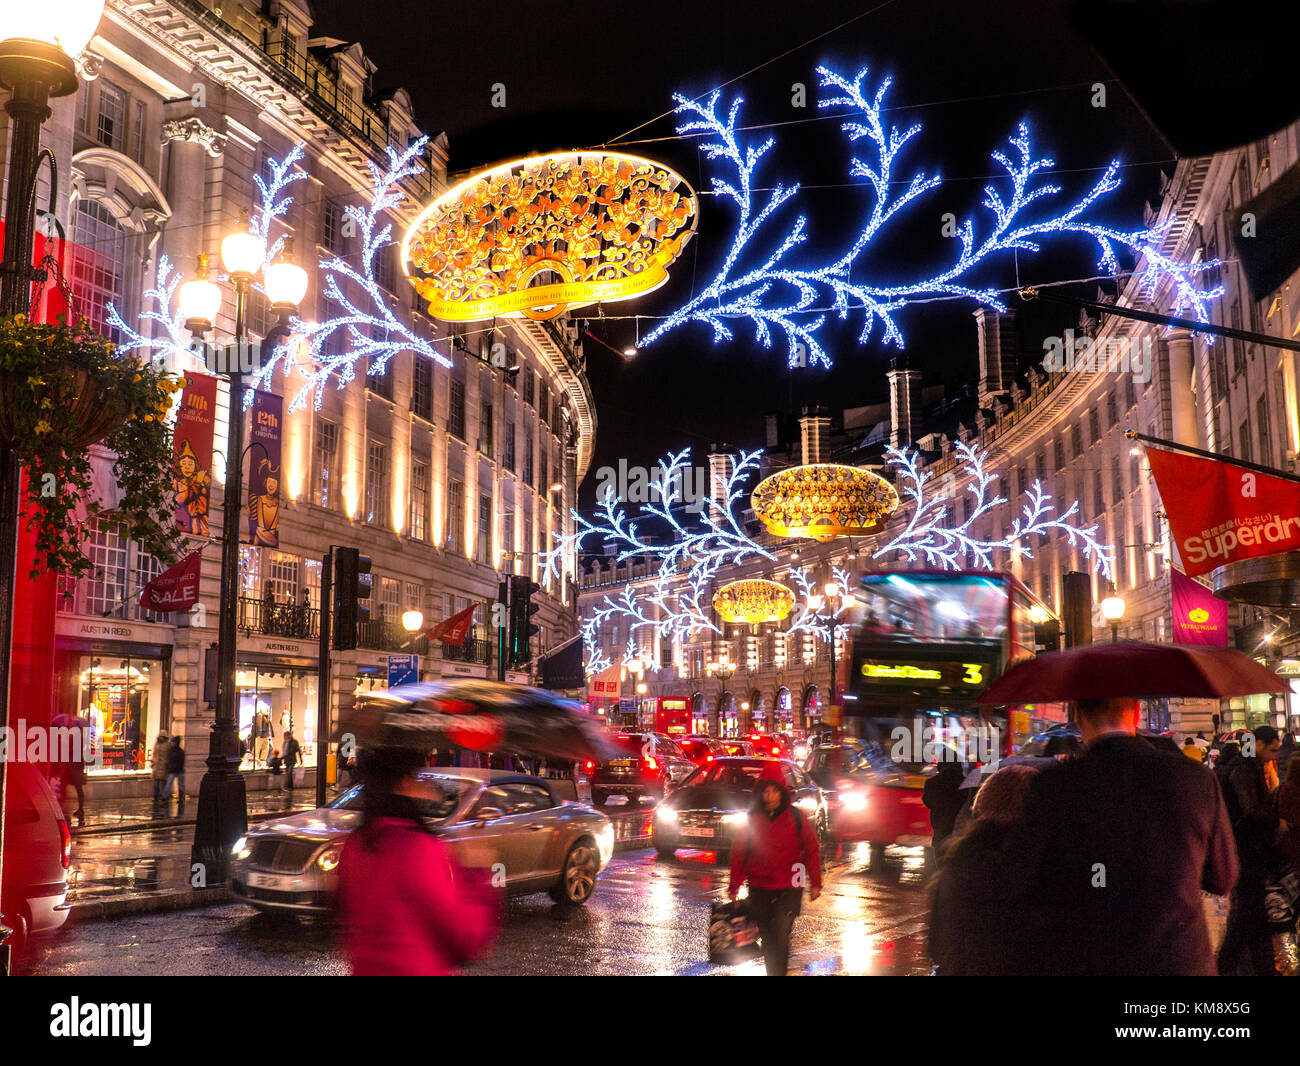 VENDITE DI NATALE SHOPPING SCENA DI LONDRA PIOGGIA LUCI DI REGENT STREET LONDRA NOTTE occupato scena d'azione acquisti di Natale, traffico sfocato e ombrelli in un bagnato piovoso lucido Regent Street con luci di Natale sopra e dietro Londra UK Foto Stock